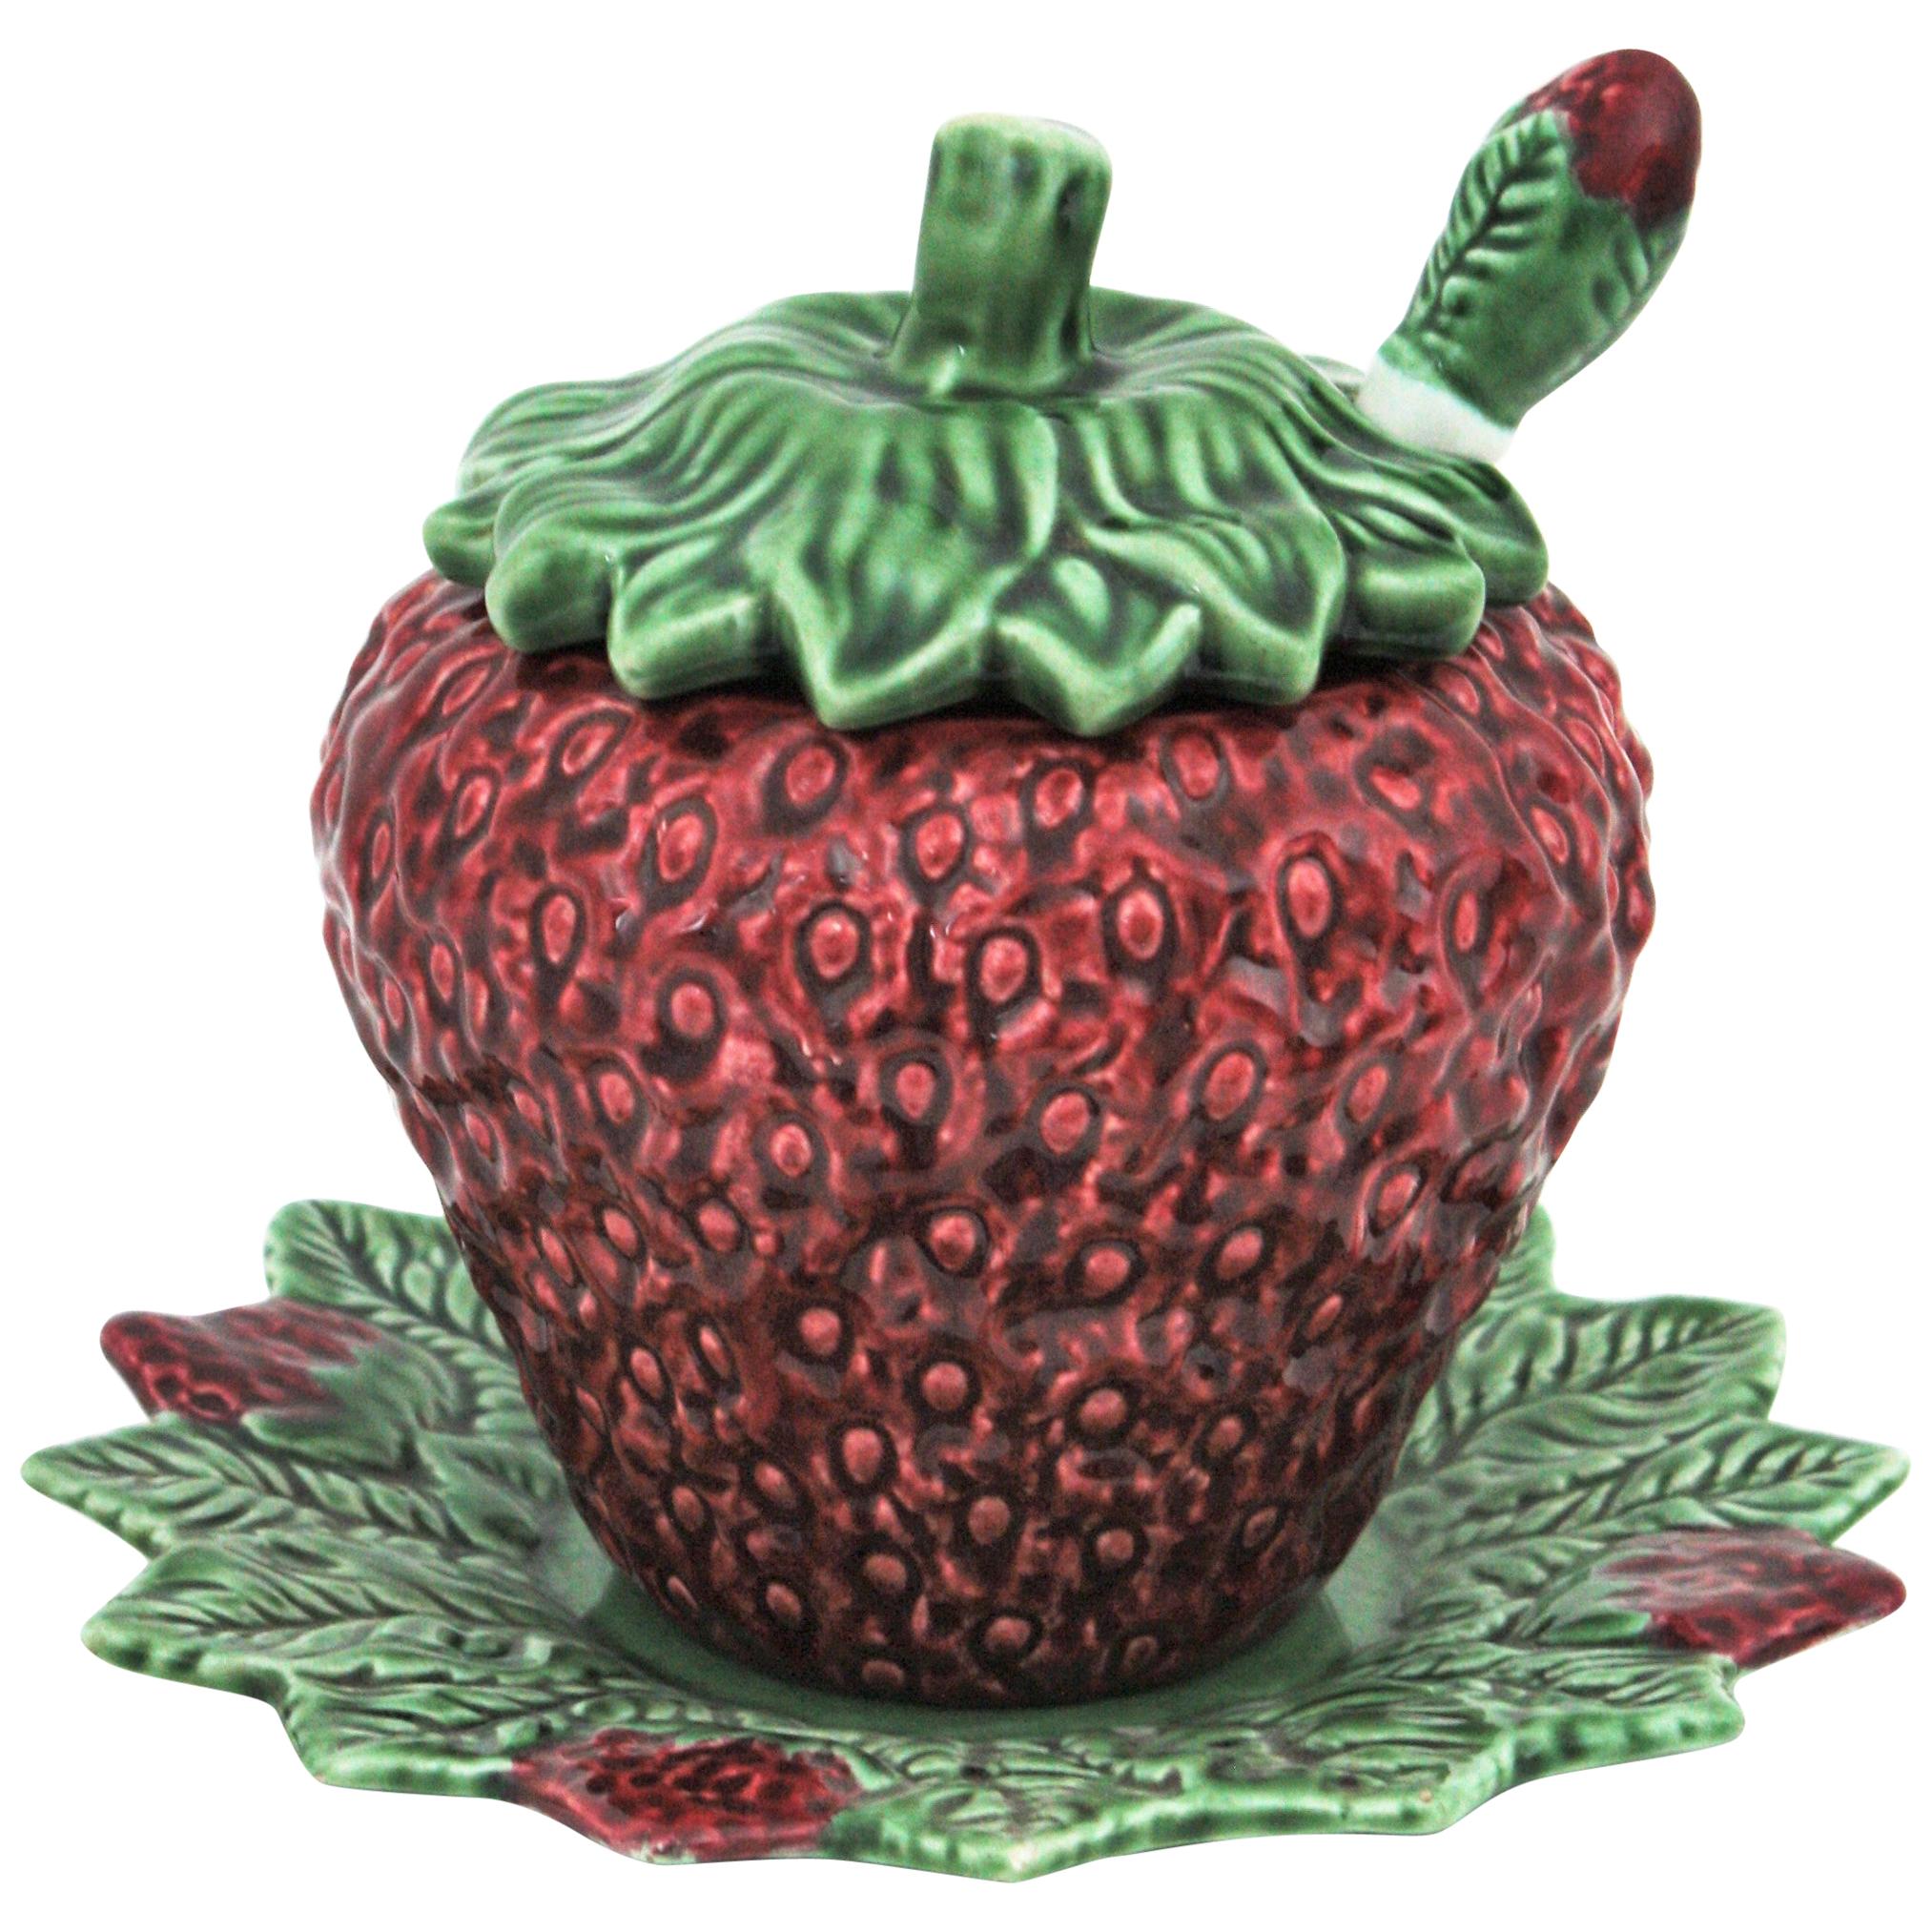 Strawberry Shaped Majolica Ceramic Tureen by Bordalo Pinheiro